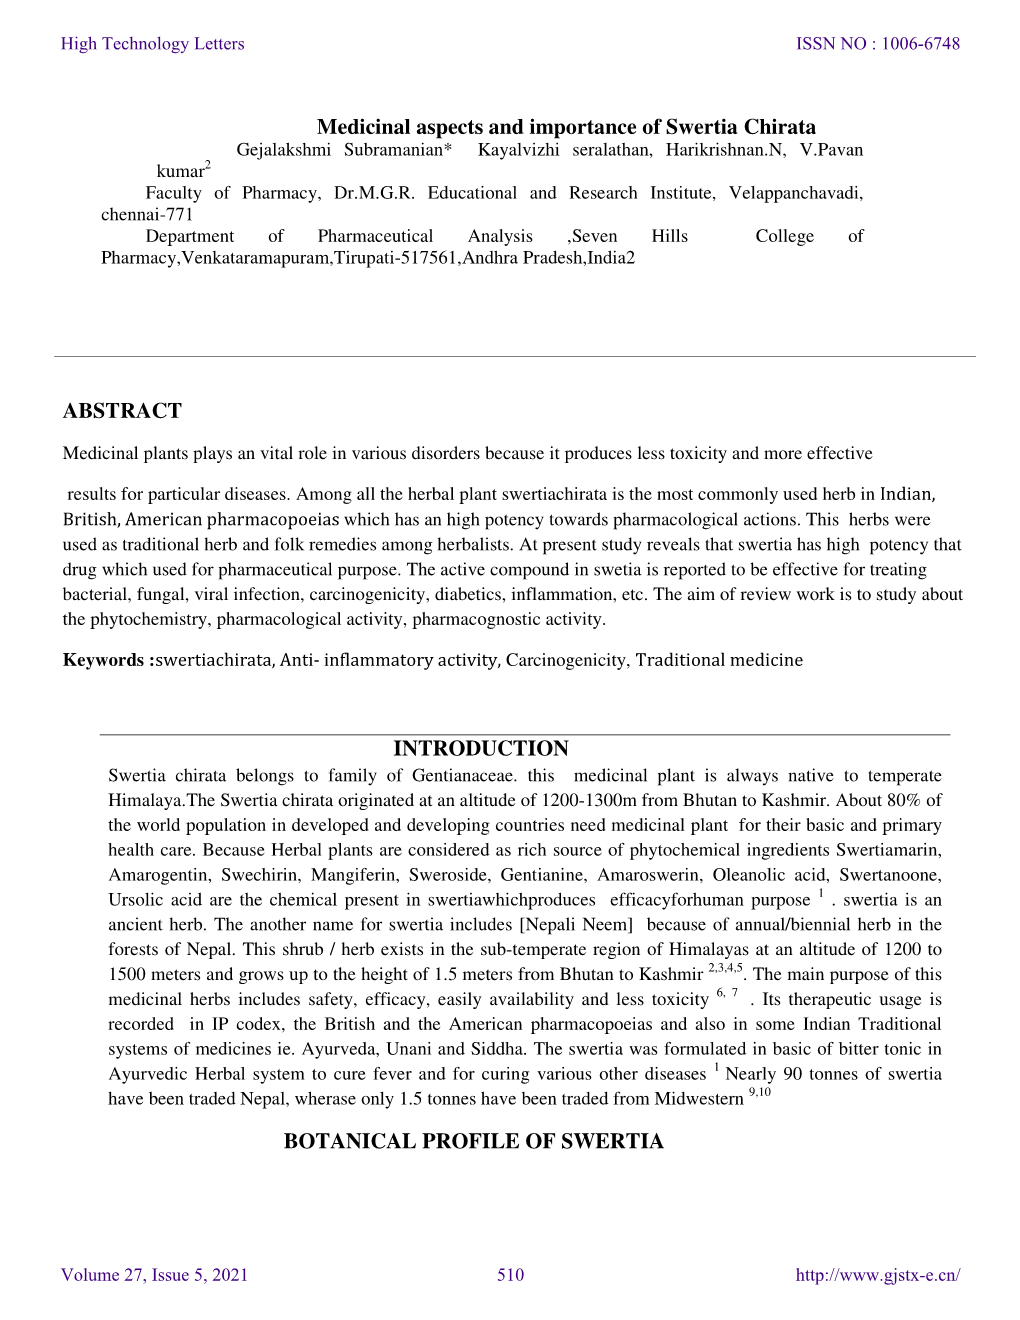 Medicinal Aspects and Importance of Swertia Chirata Gejalakshmi Subramanian* Kayalvizhi Seralathan, Harikrishnan.N, V.Pavan Kumar 2 Faculty of Pharmacy, Dr.M.G.R